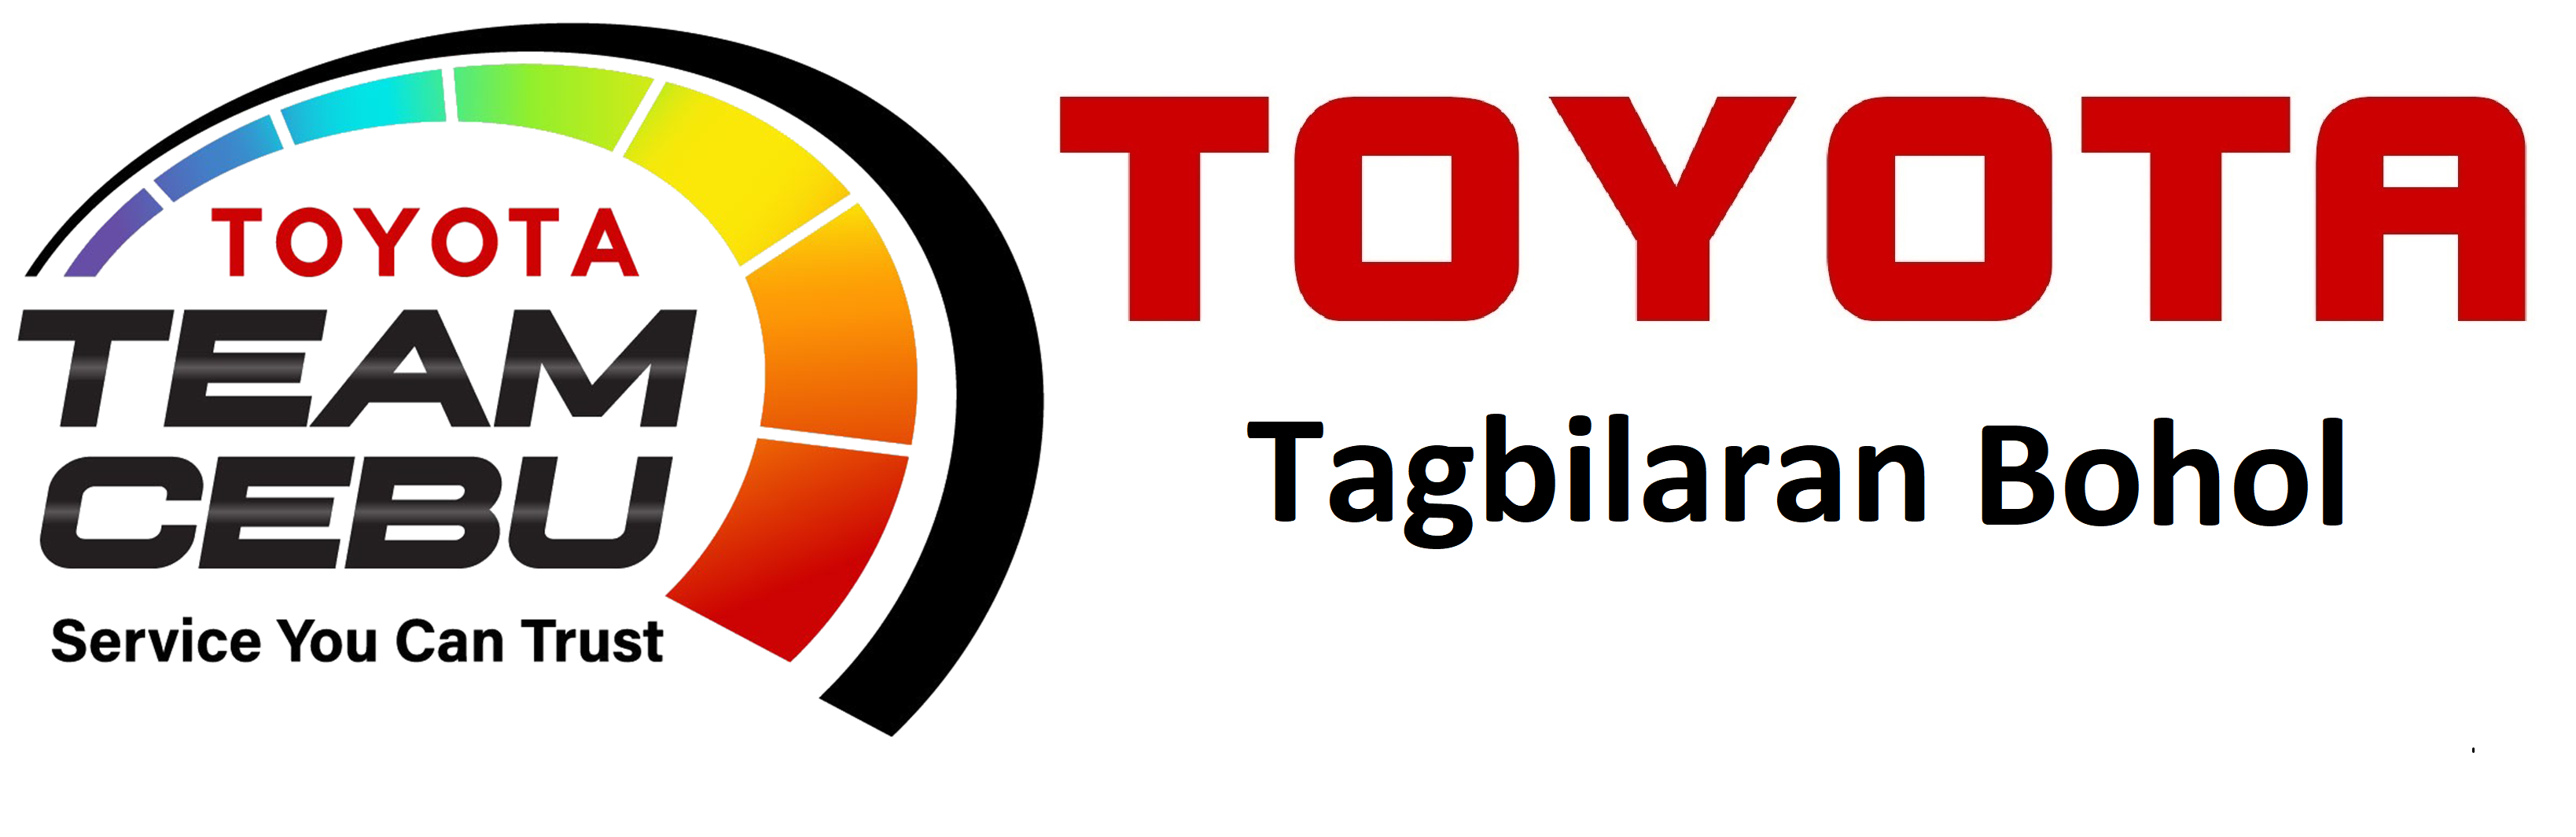 Toyota Tagbilaran